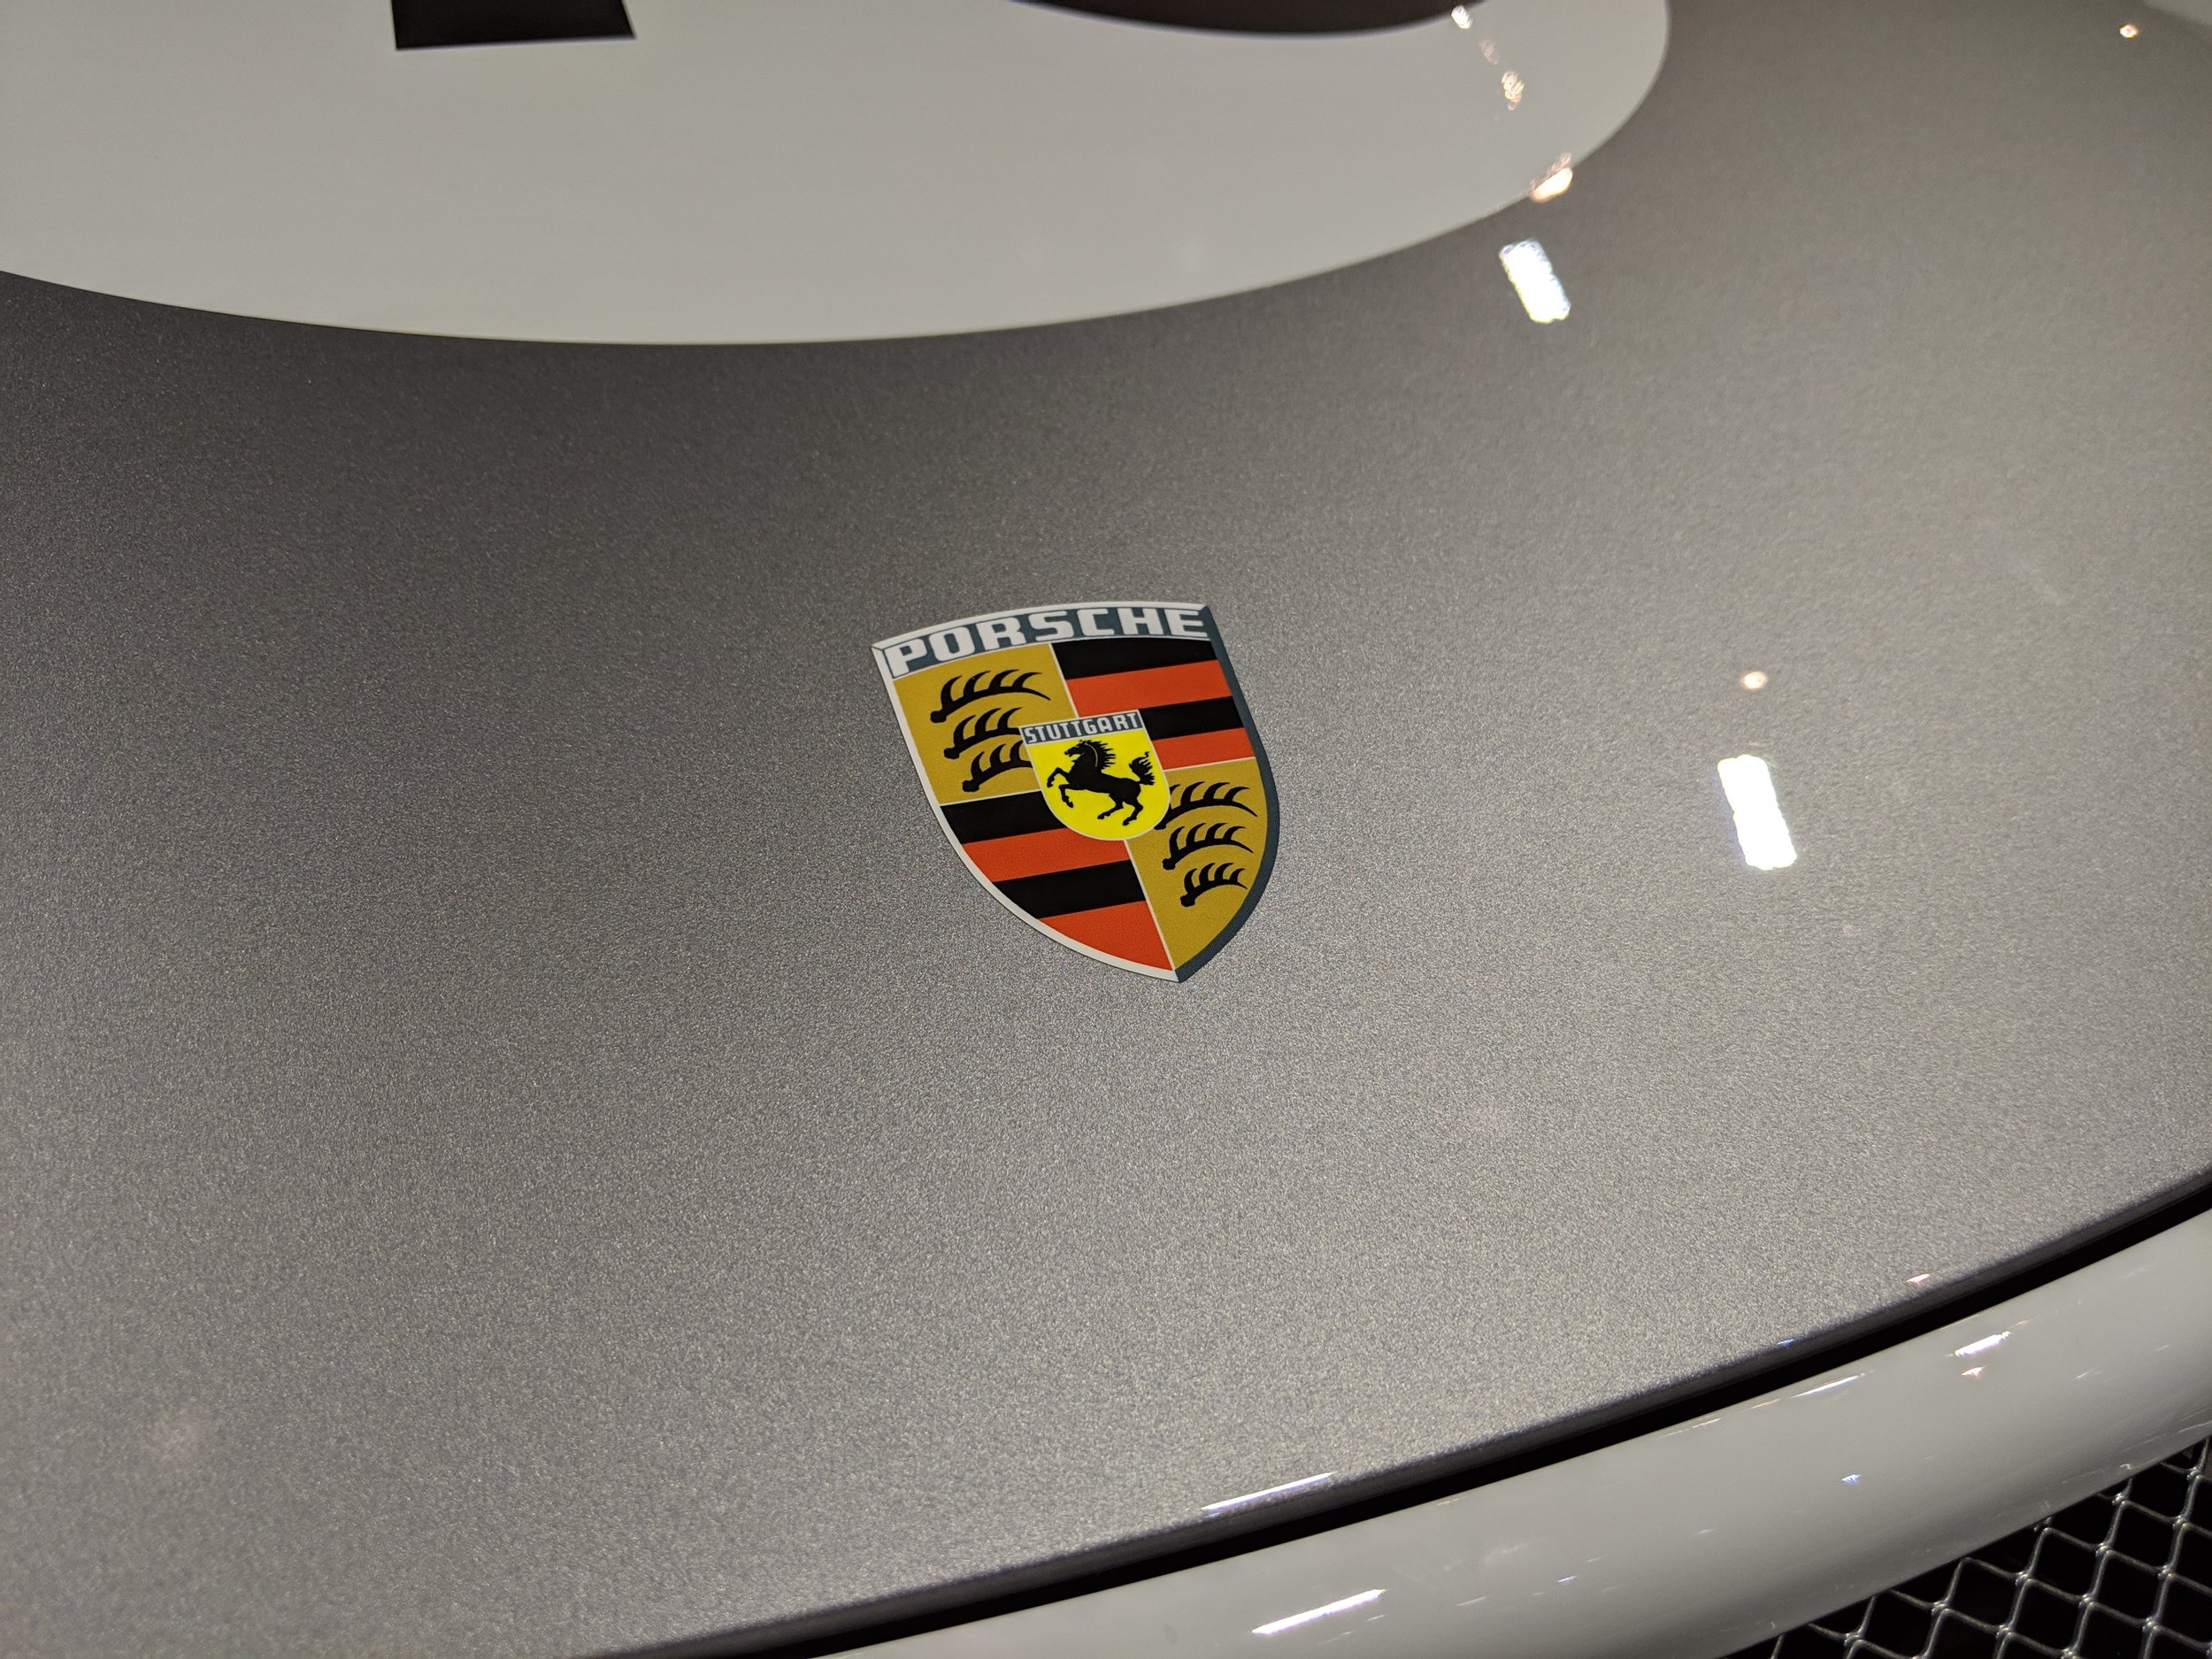 Porsche_911_speedster_heritage_crest.jpg